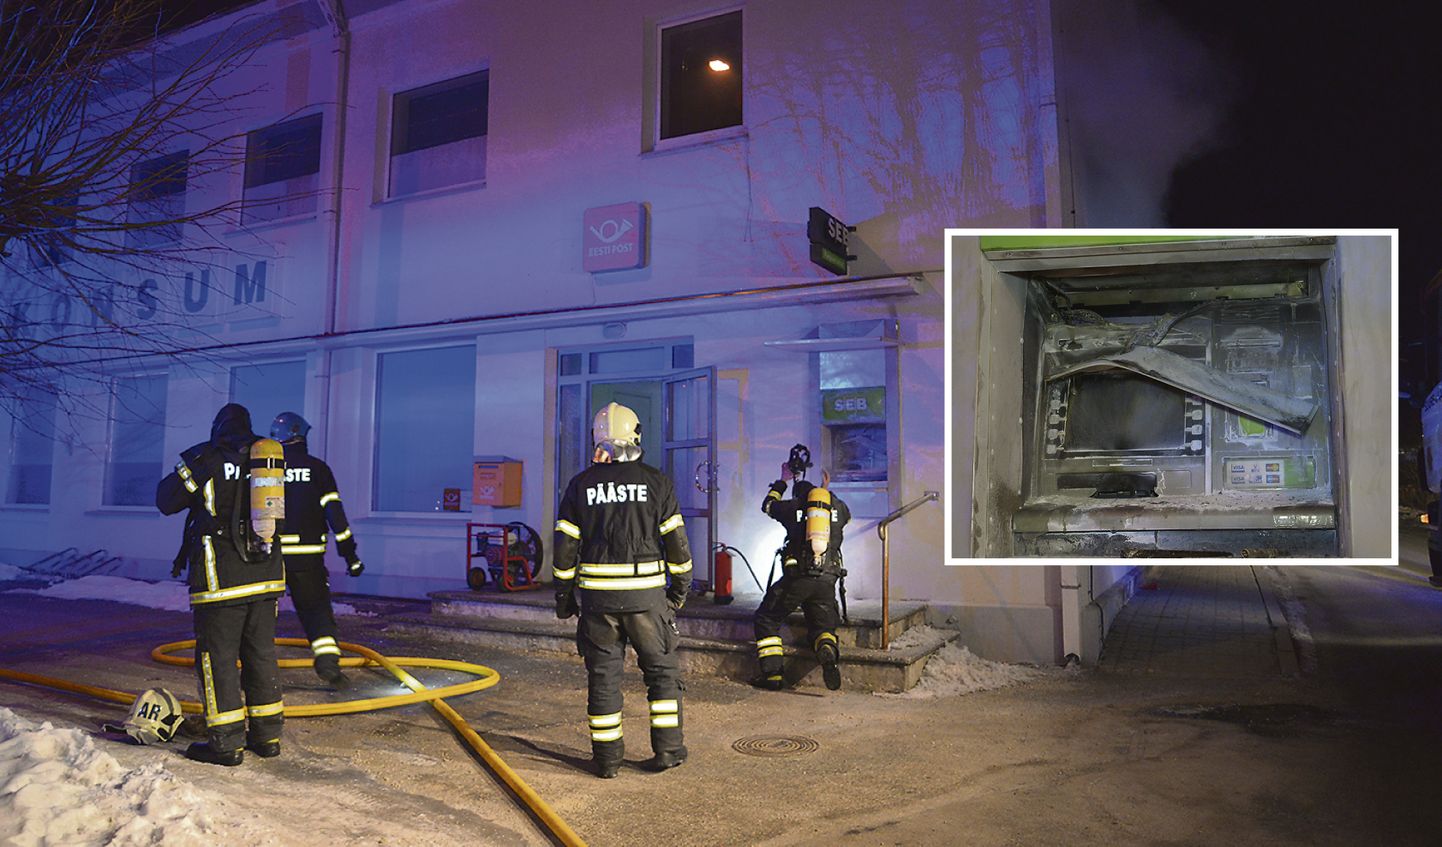 Kui päästjad tööle asusid, põles maja seina küljes olev pangaautomaat ning hoones olid mitu ruumi suitsu täis.